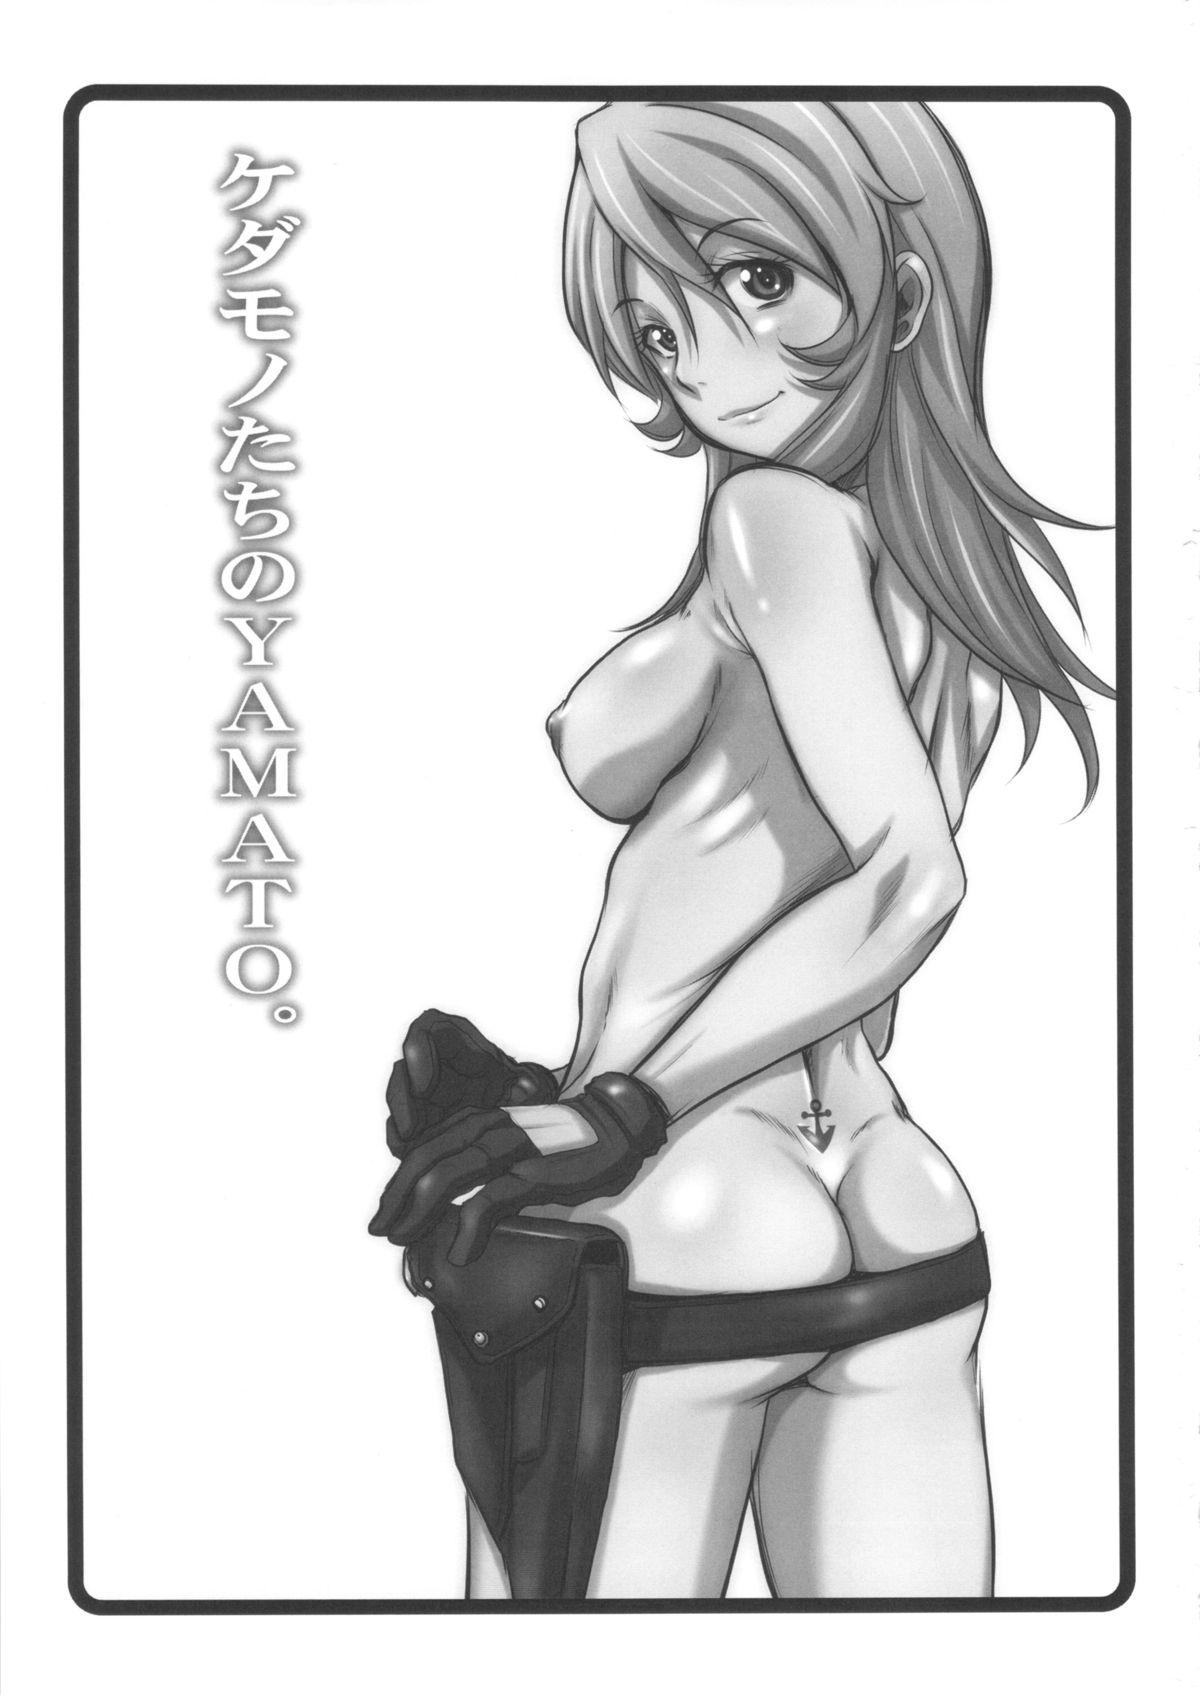 Lesbian Porn Kedamono-tachi no YAMATO. - Space battleship yamato Sis - Page 2